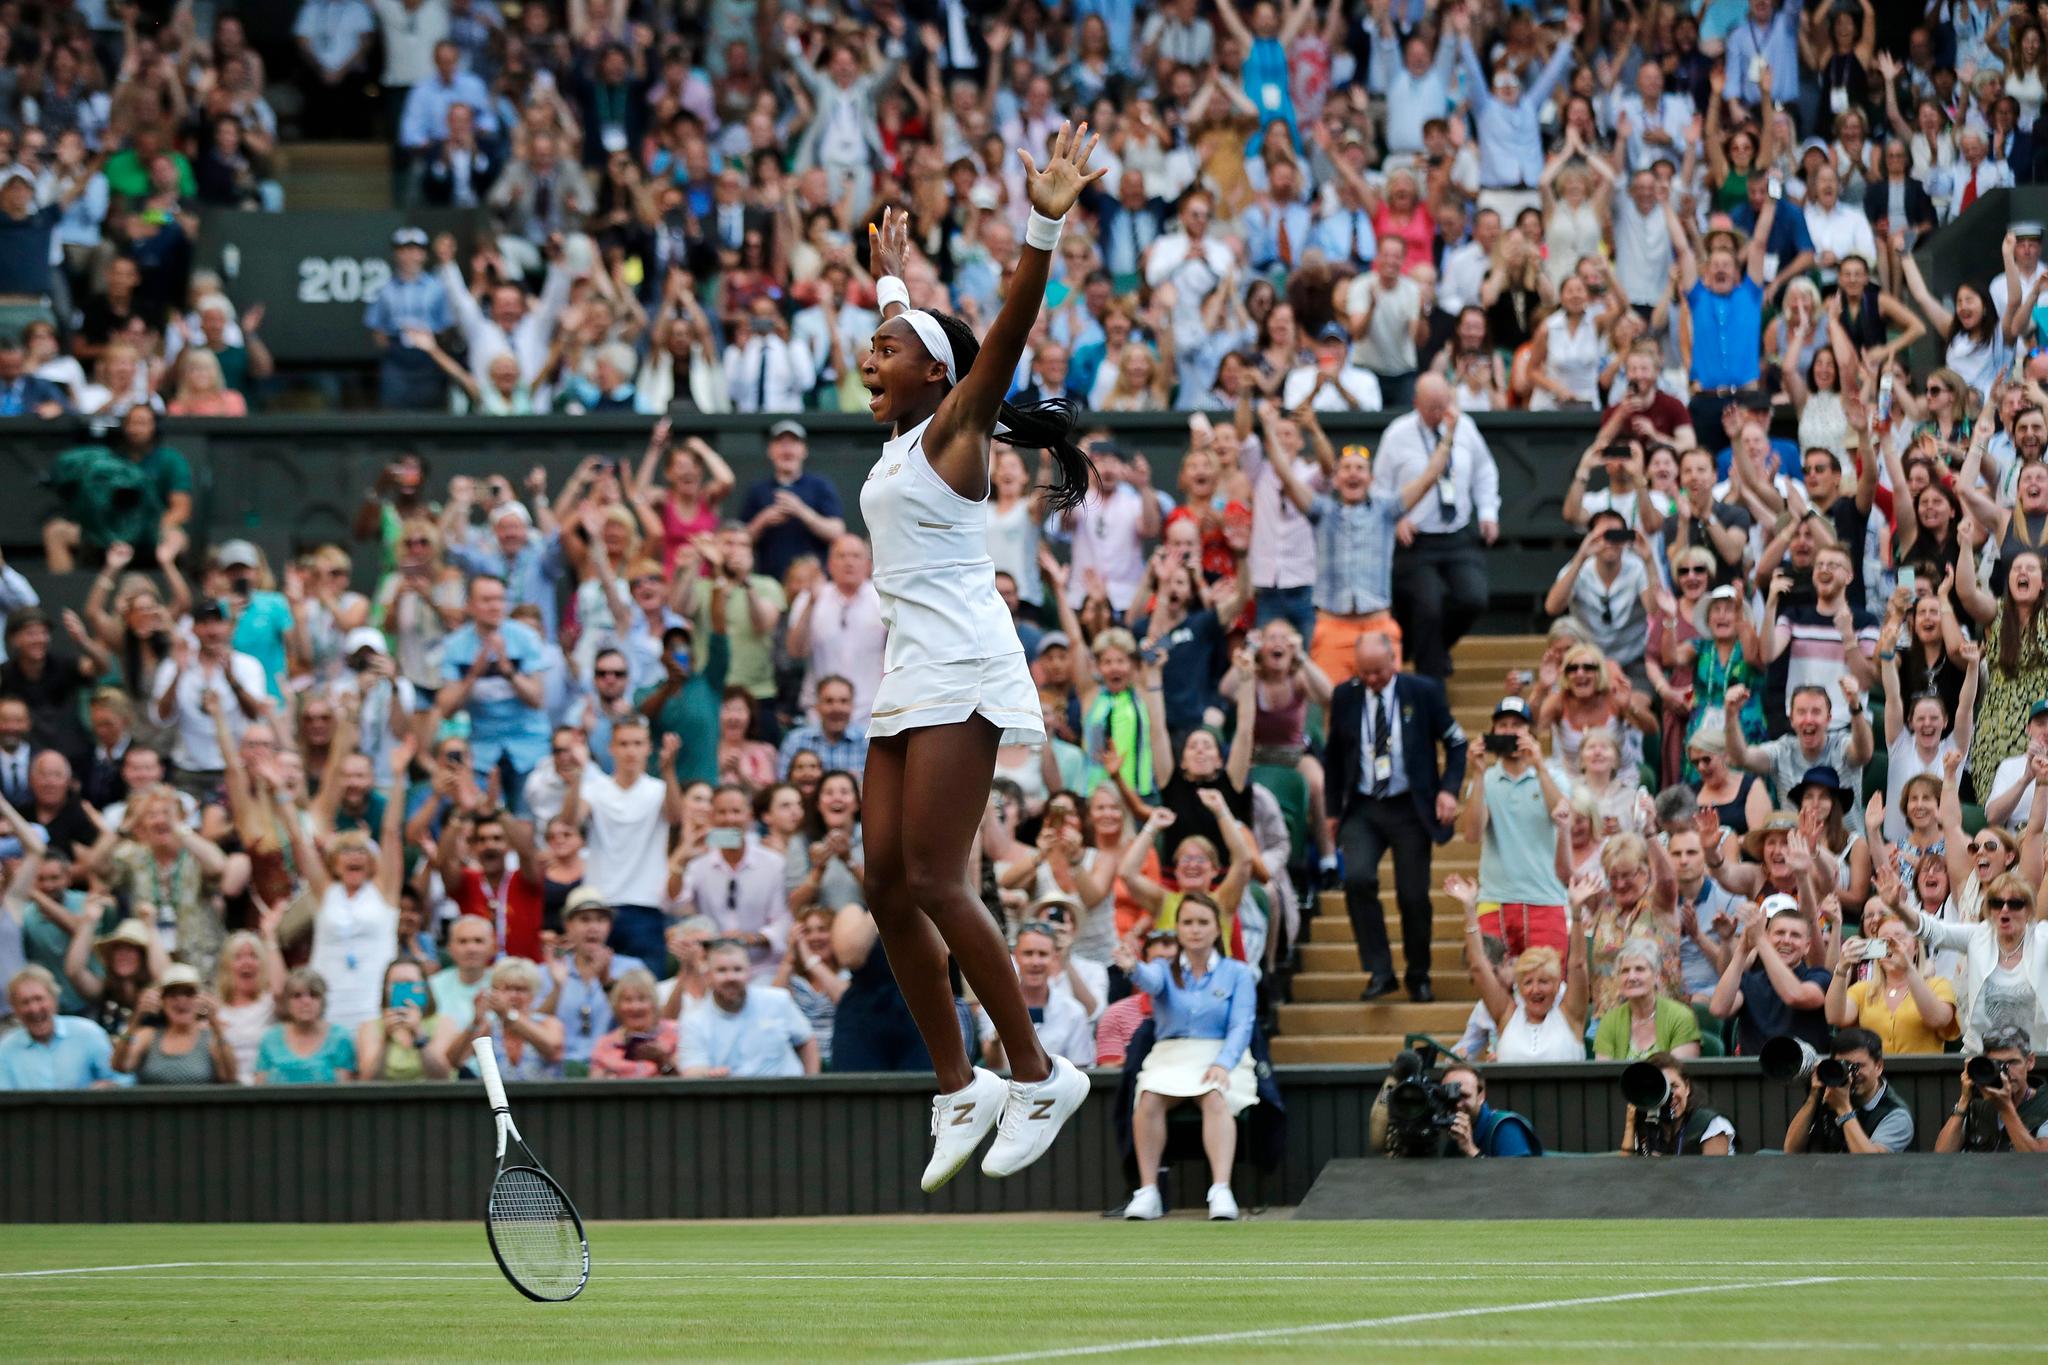 Slike scener får vi ikke se i år. Coco Gauff jubler etter å ha vunnet en kamp i Wimbledon-turneringen i tennis. Gressturneringen i London er avlyst for første gang siden 2. verdenskrig. 